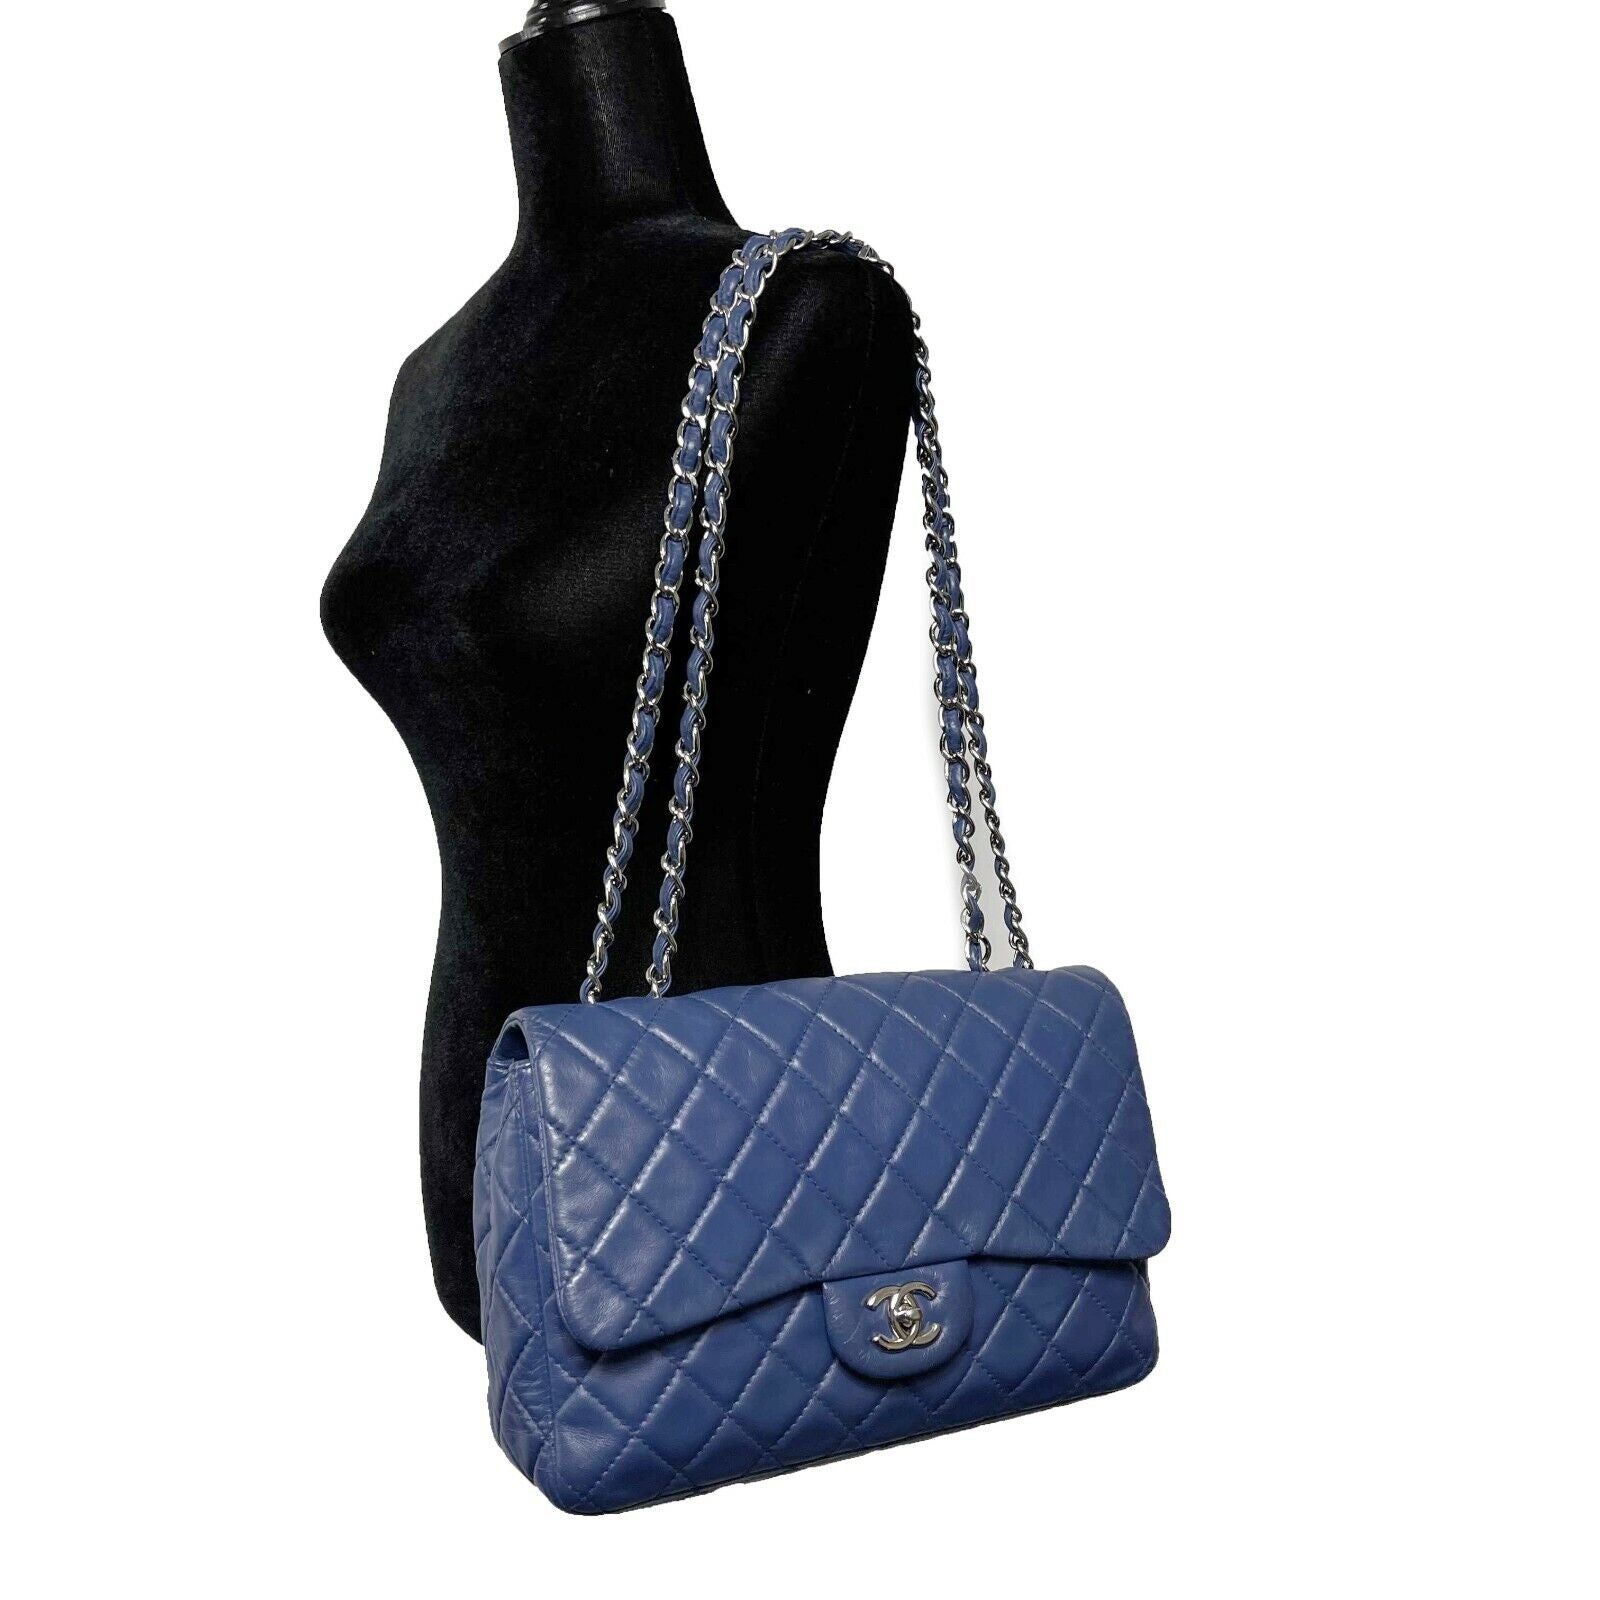 chanel navy blue handbag